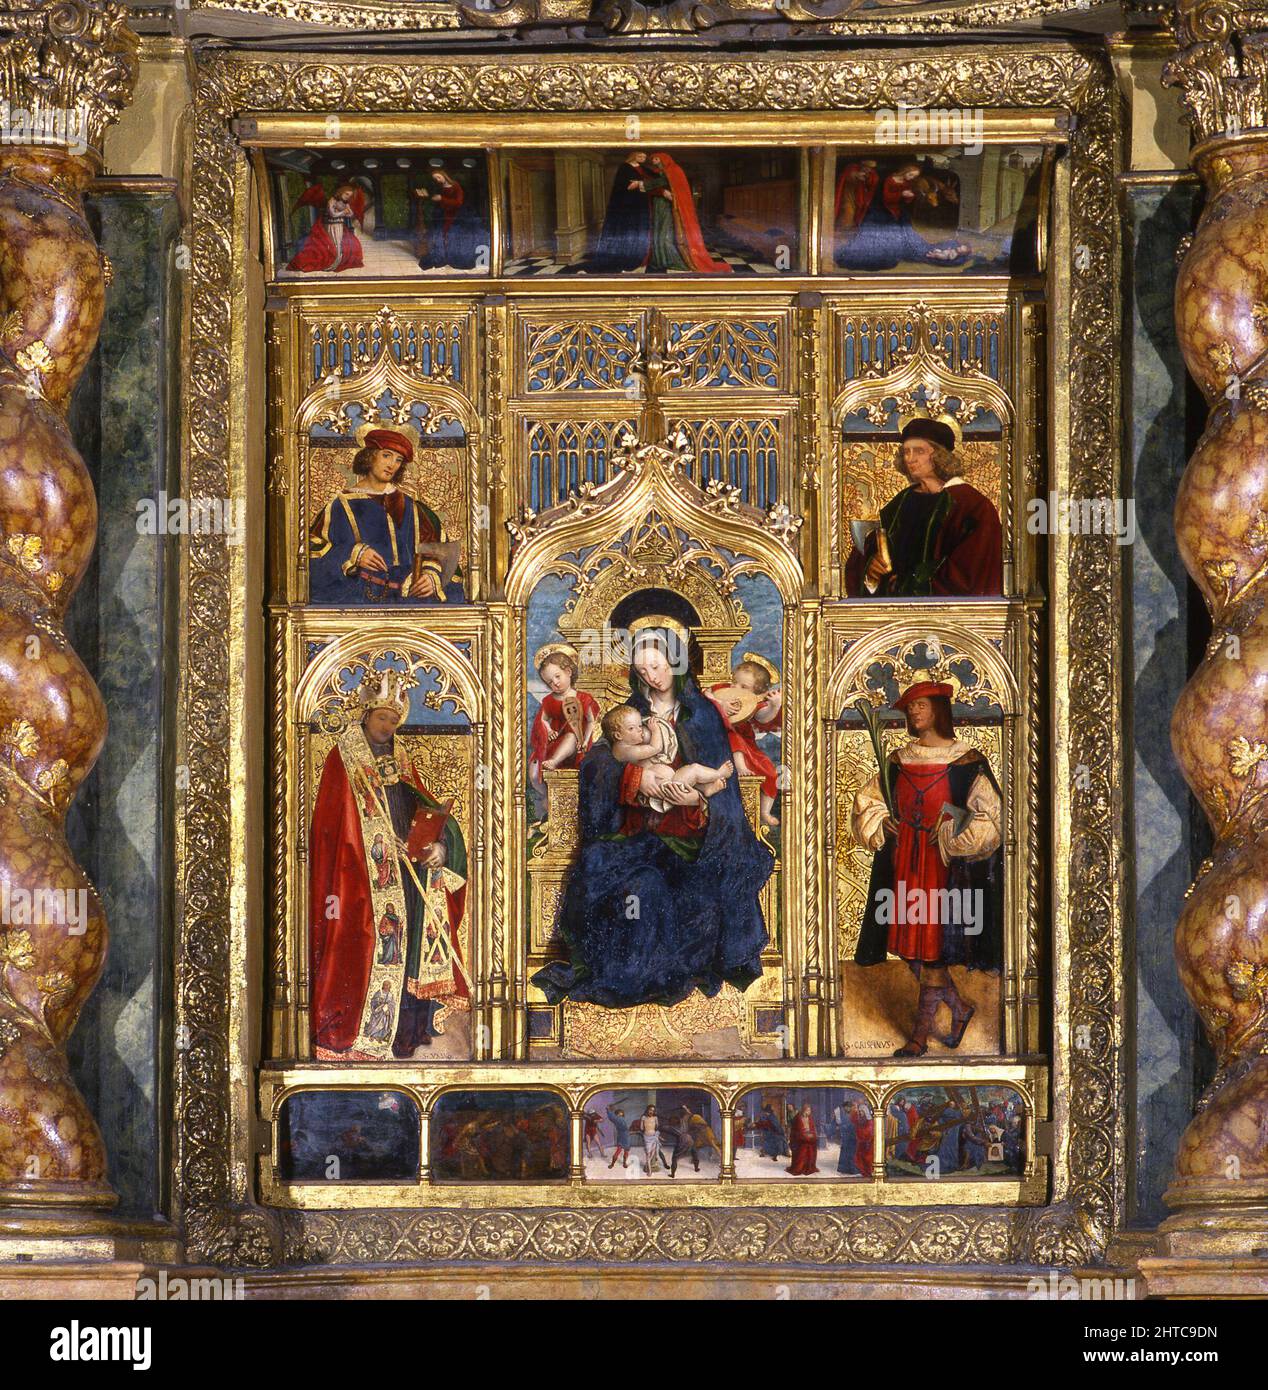 Torino, Italia - Gennaio 2012: Il dipinto della Madonna Nursing di Defendente Ferrari (1511 - 1535), conservato nel Duomo. Foto Stock